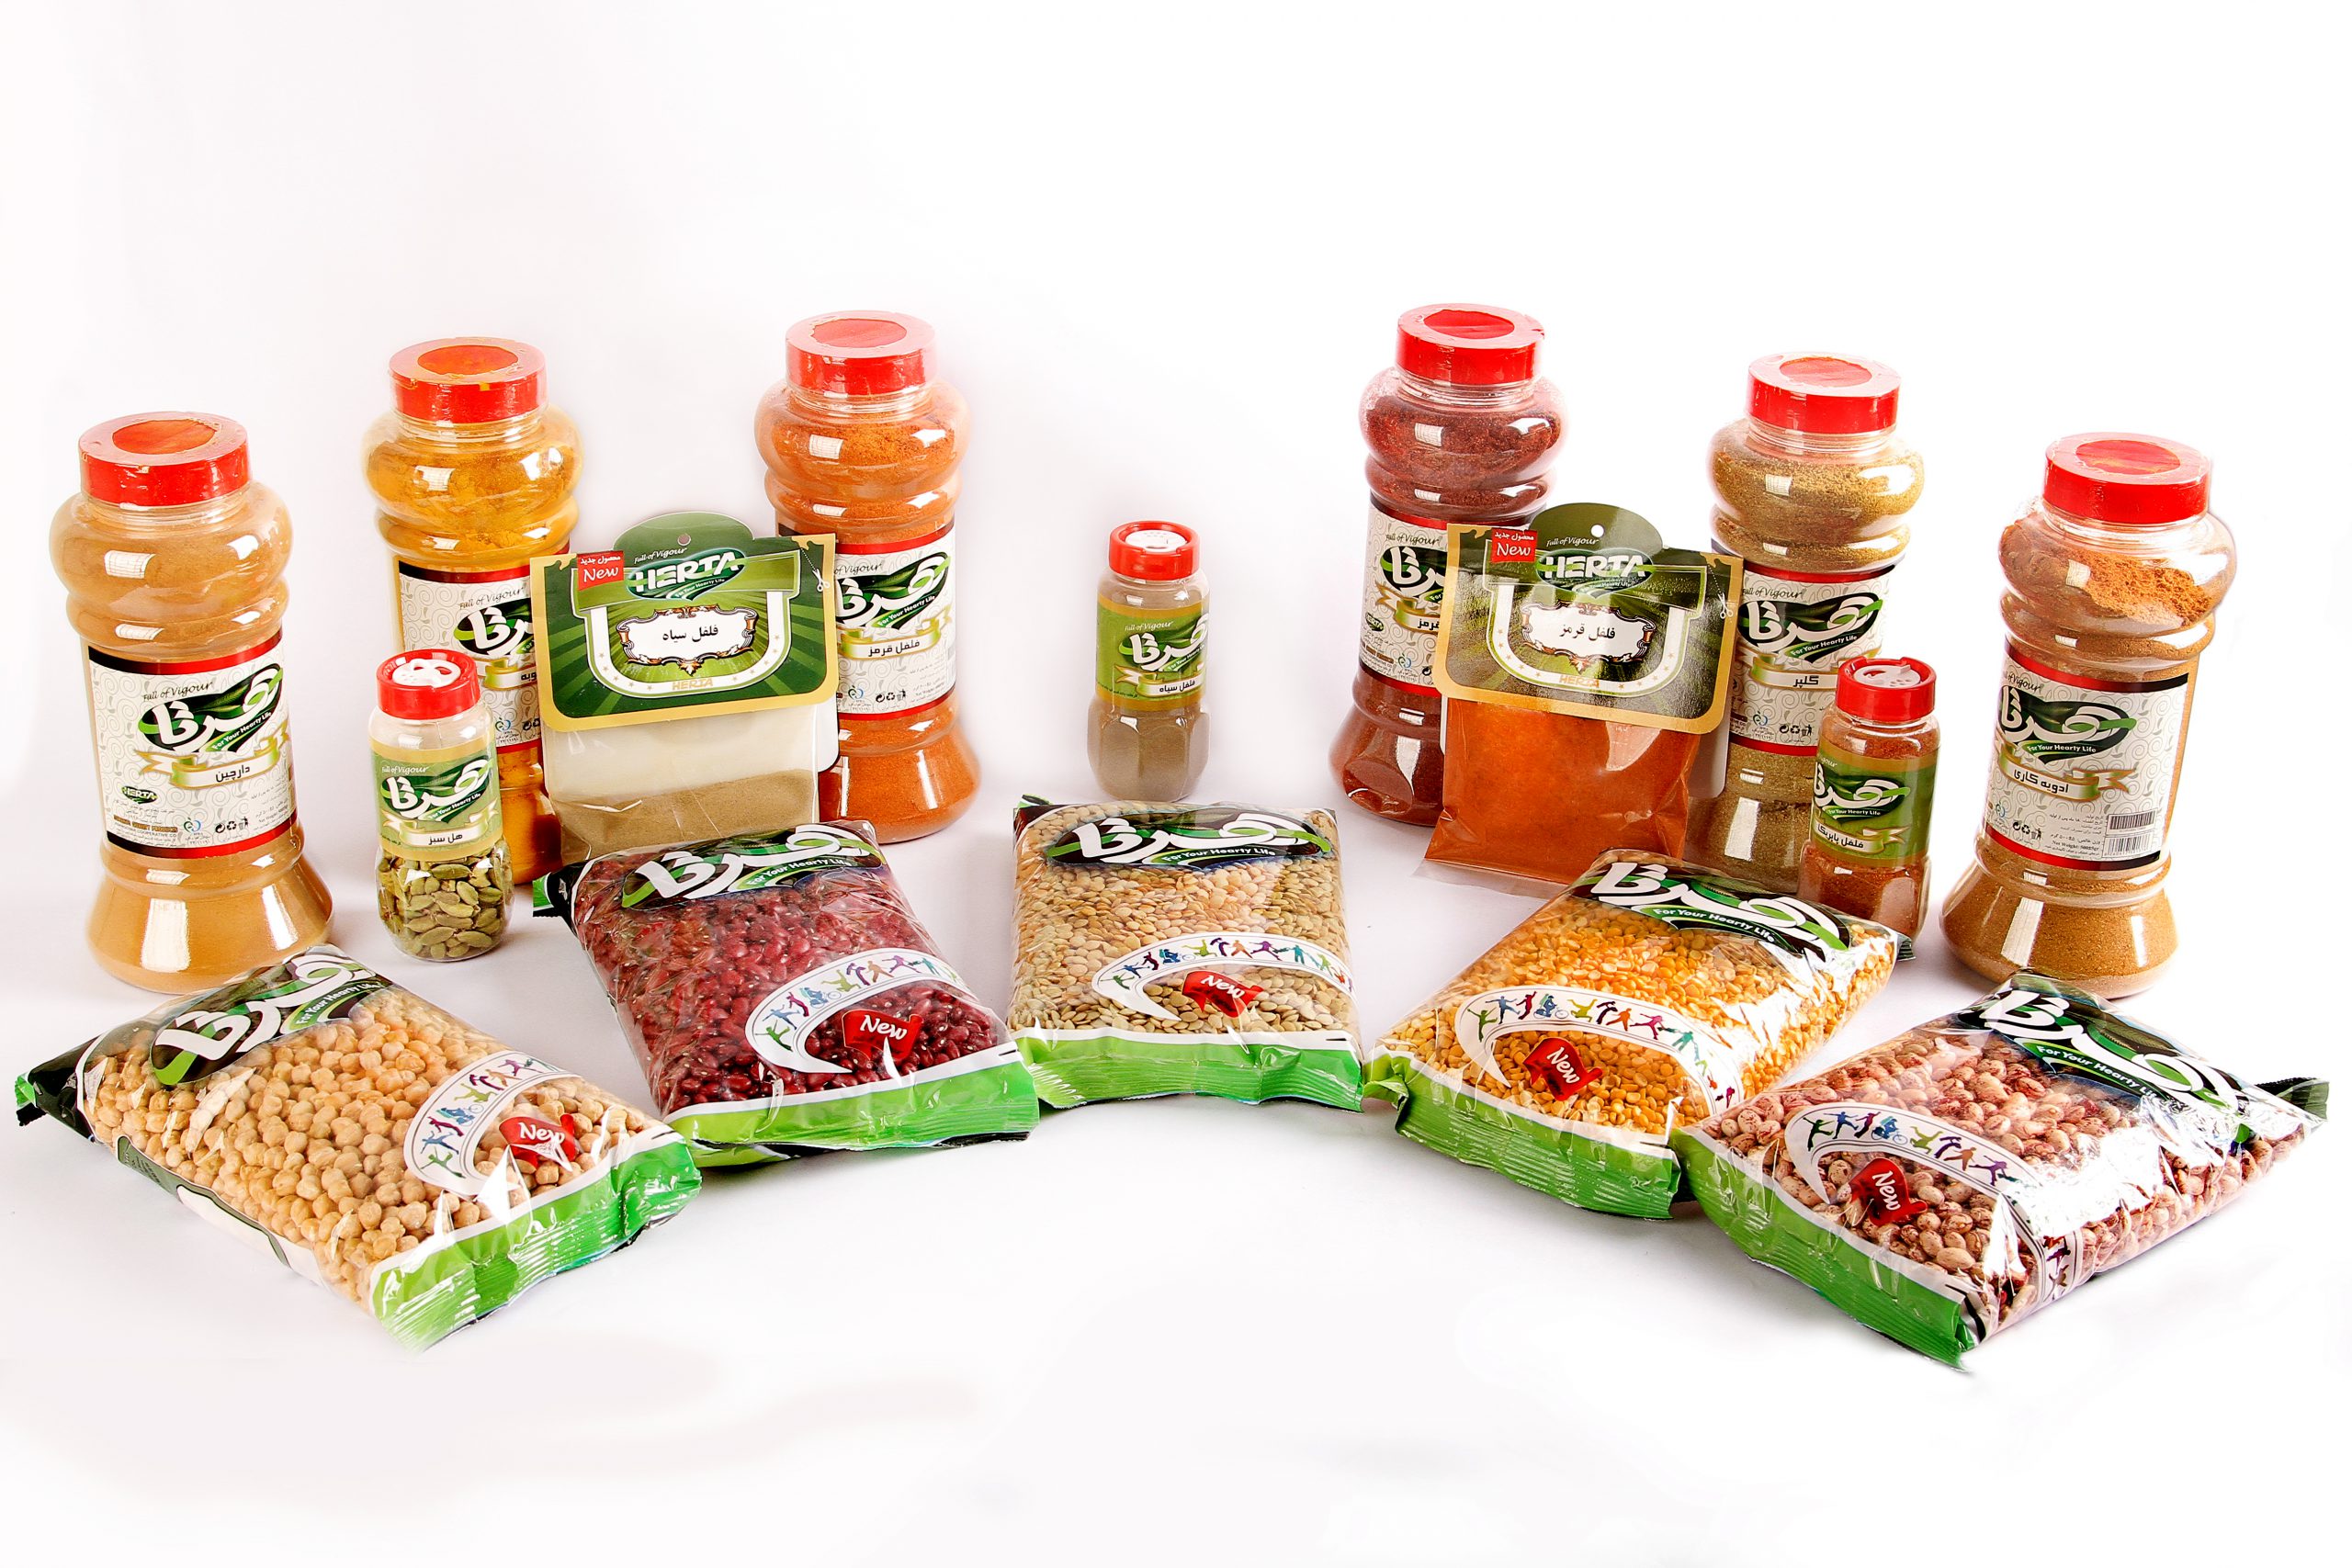 فروش سازمانی محصولات غذایی هرتا با خرید عمده ادویه و حبوبات